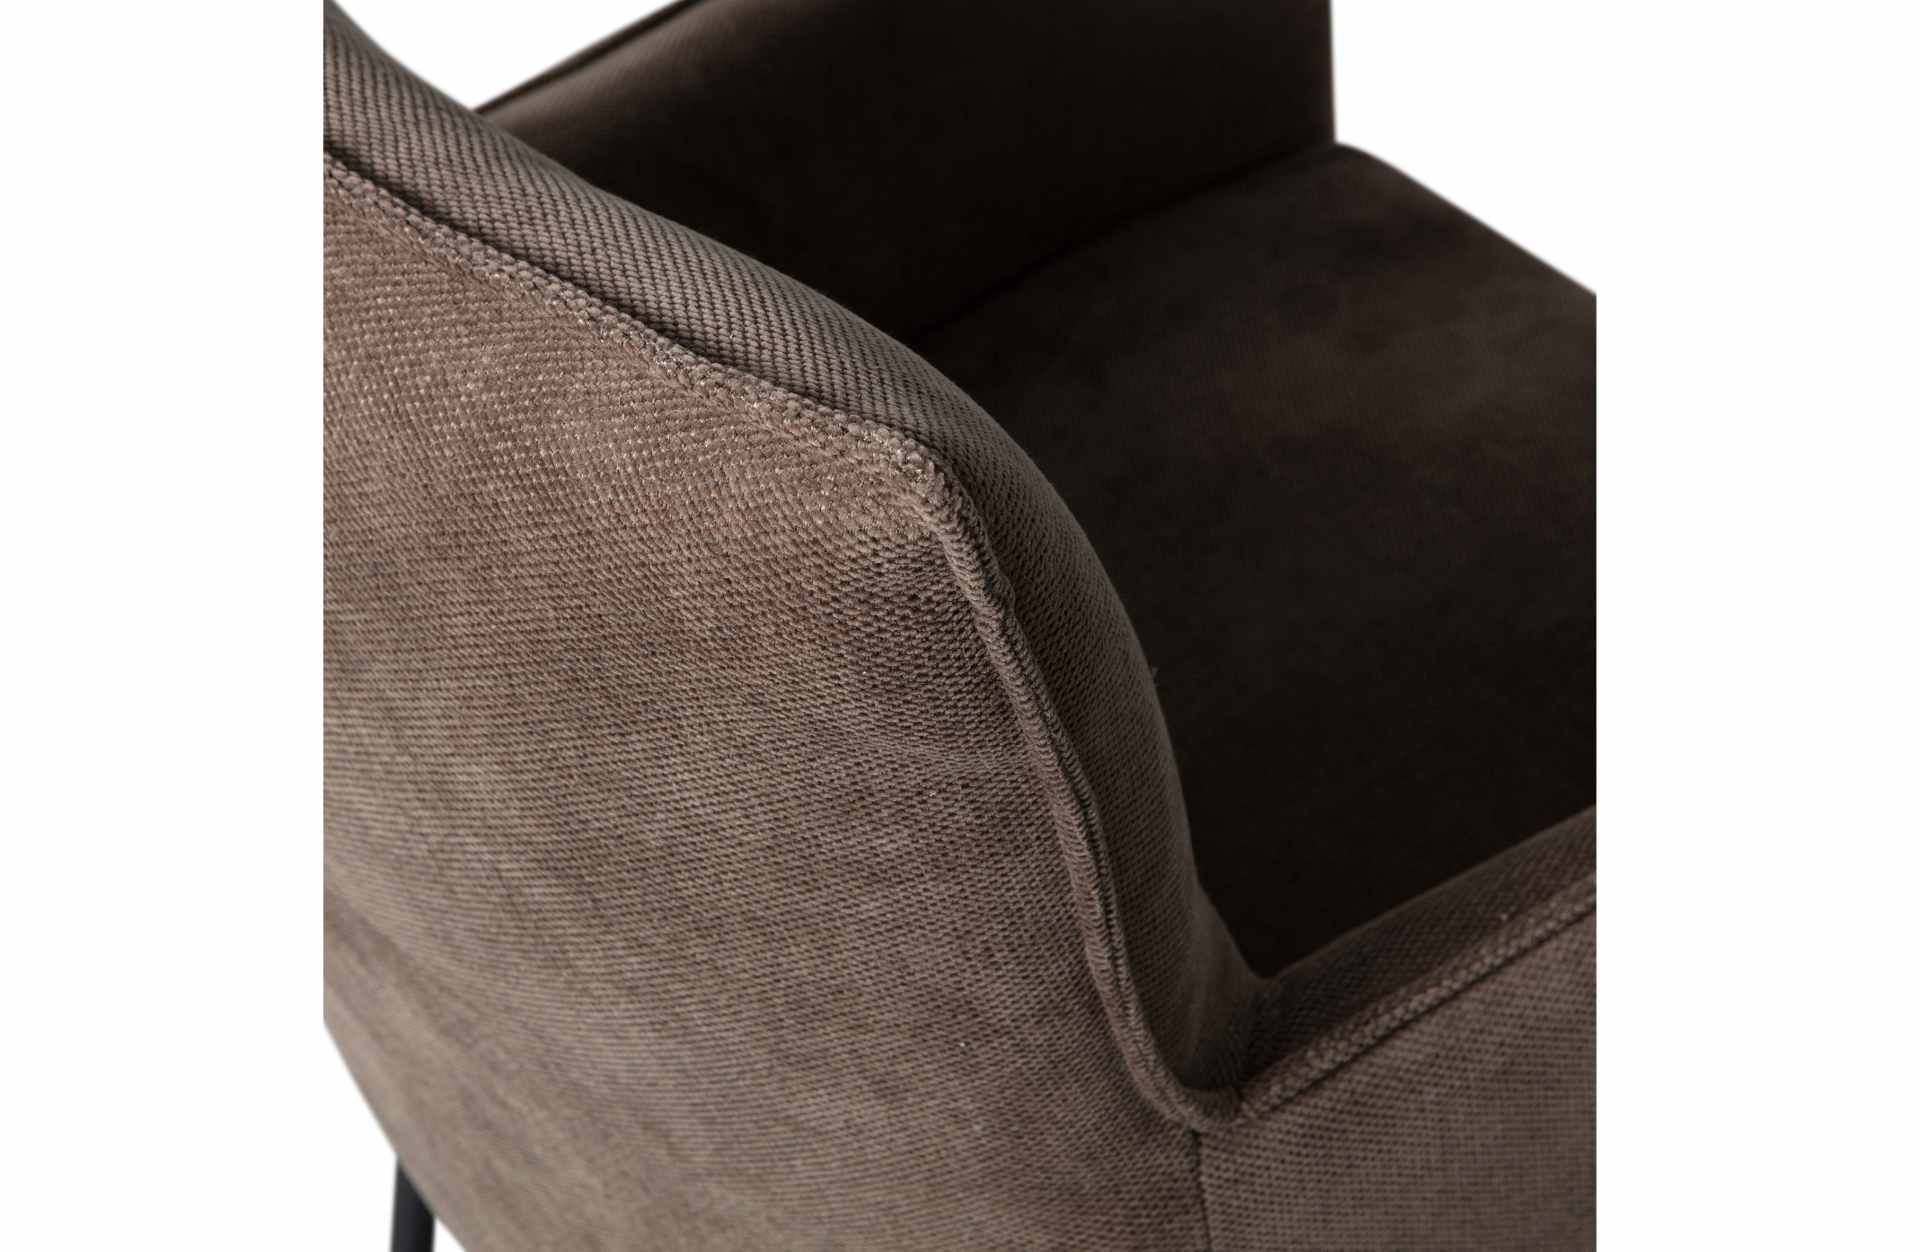 Der Esszimmerstuhl Ezra überzeugt mit seinem modernen Design. Gefertigt wurde er aus Kunstfasern, welche einen braunen Farbton besitzen. Das Gestell ist aus Metall und hat eine schwarze Farbe. Die Sitzhöhe beträgt 53 cm.